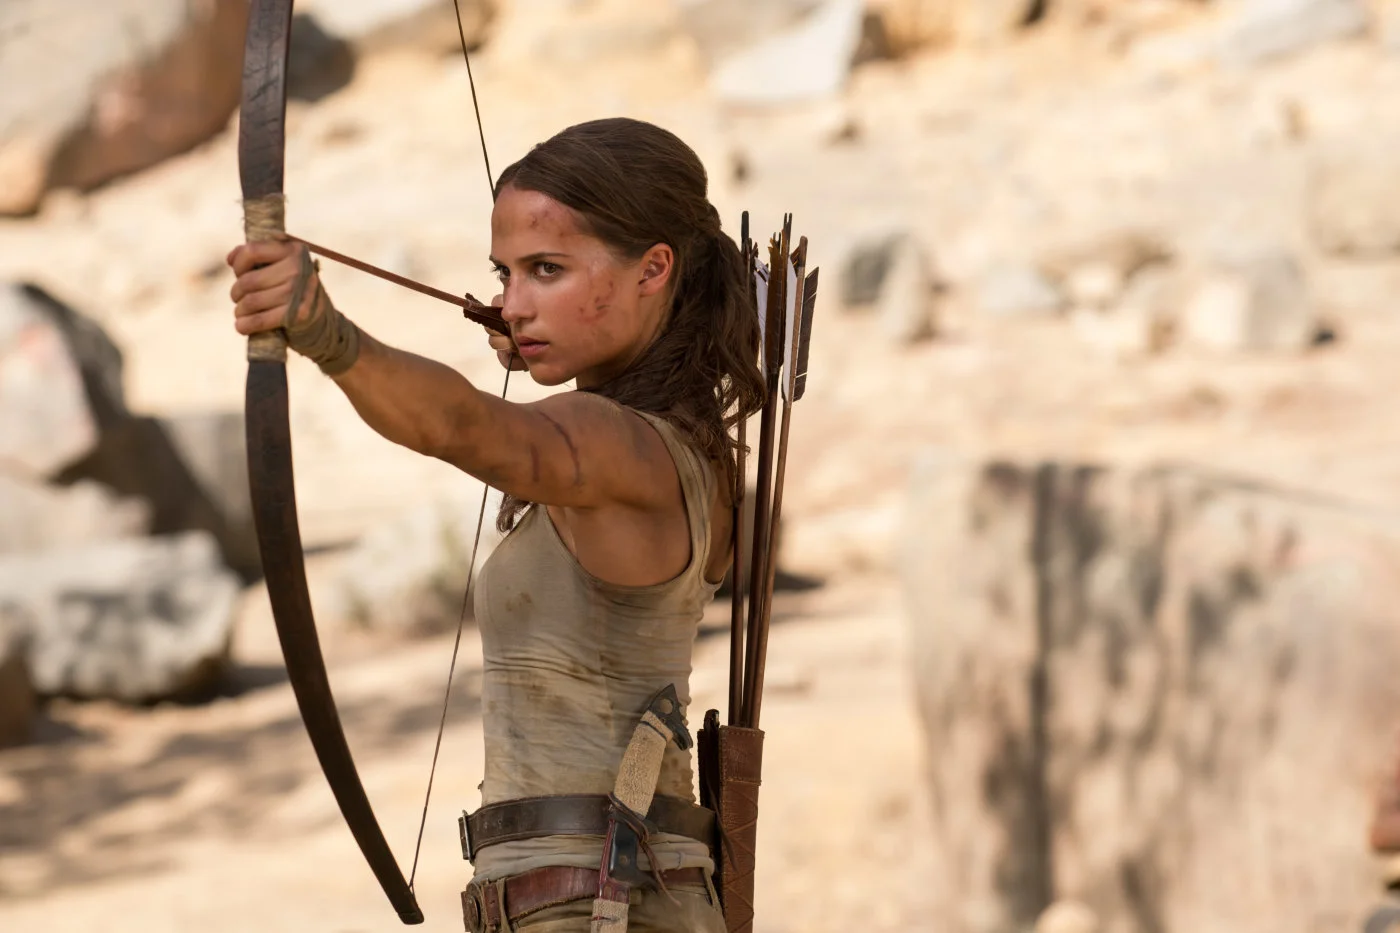 15 марта на наши экраны вышел «Tomb Raider: Лара Крофт», очередная попытка сделать достойную экранизацию видеоигры. Это ребут киновоплощения Лары. Если два фильма с Джоли относились к старой серии игр, то новая Крофт, созданная Алисией Викандер, — экранизация перезагруженной в 2013 году игровой серии.